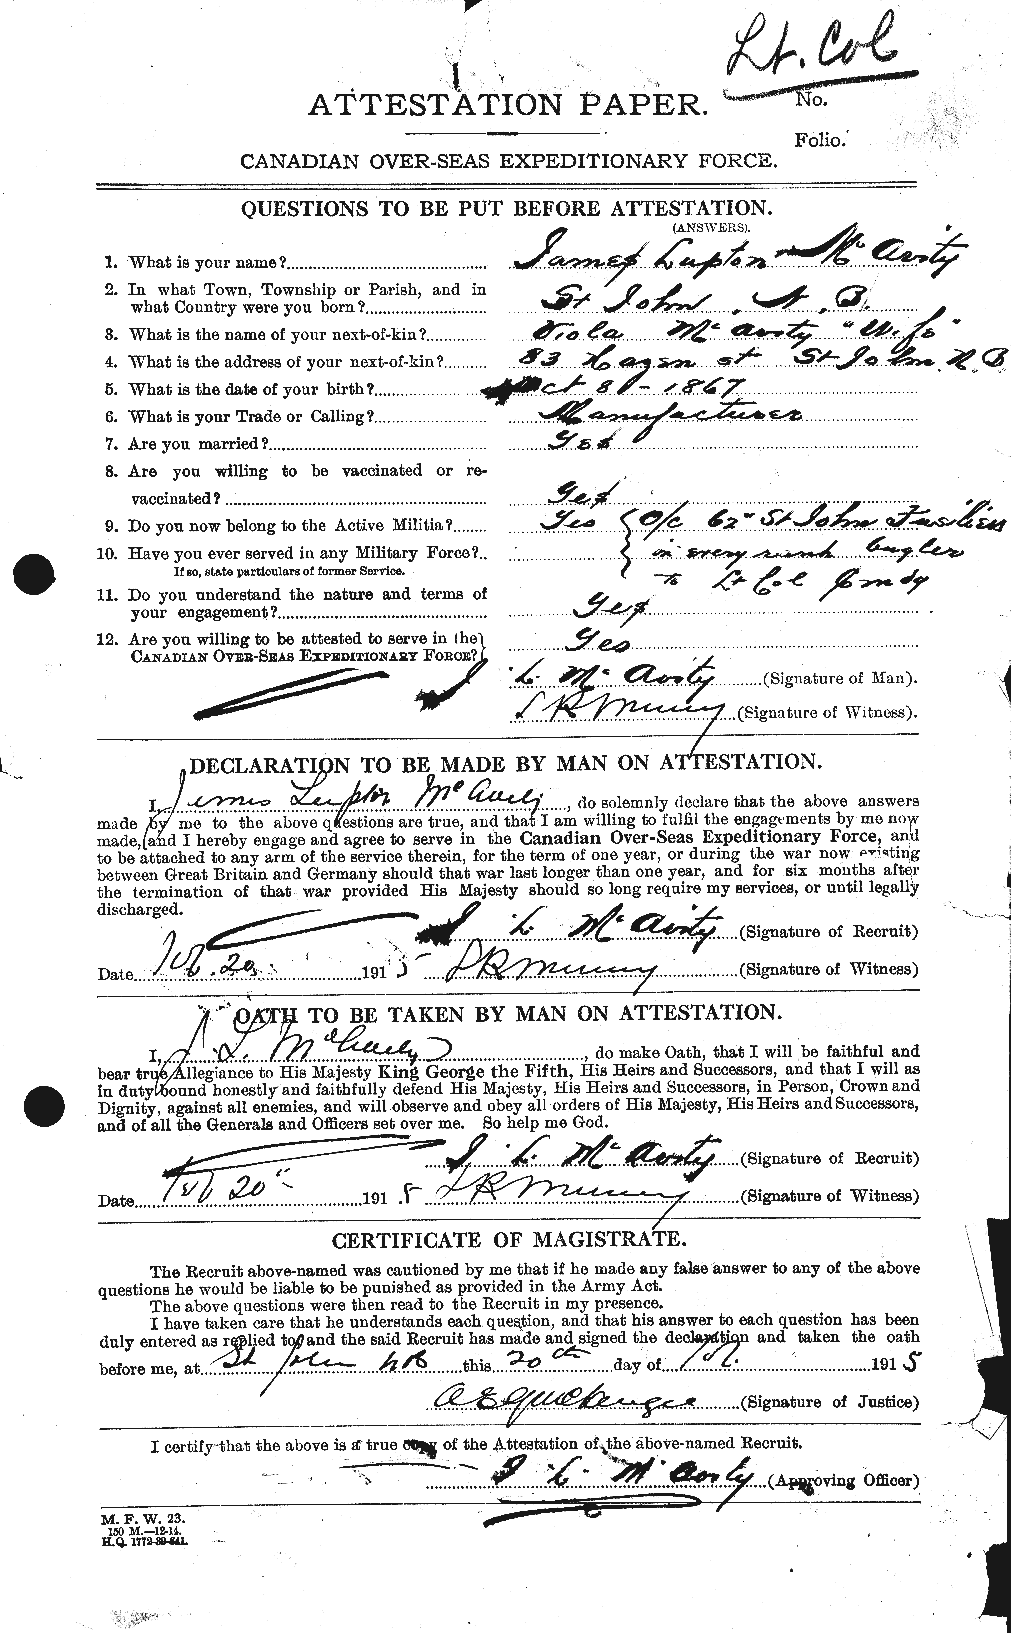 Dossiers du Personnel de la Première Guerre mondiale - CEC 130043a